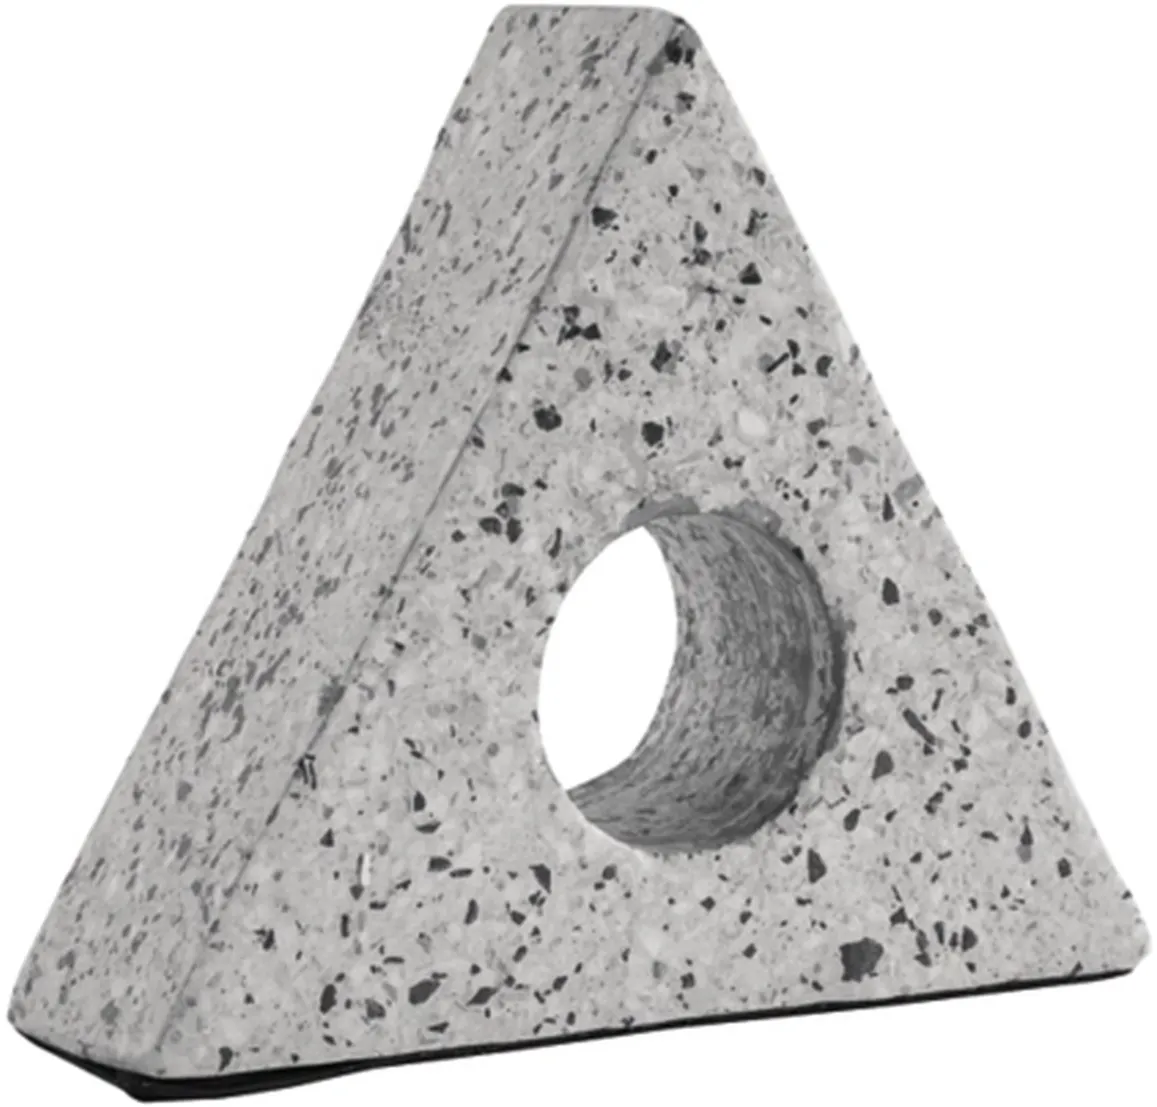 Signature Design by Ashley® Setehen White/Black Triangular Sculpture